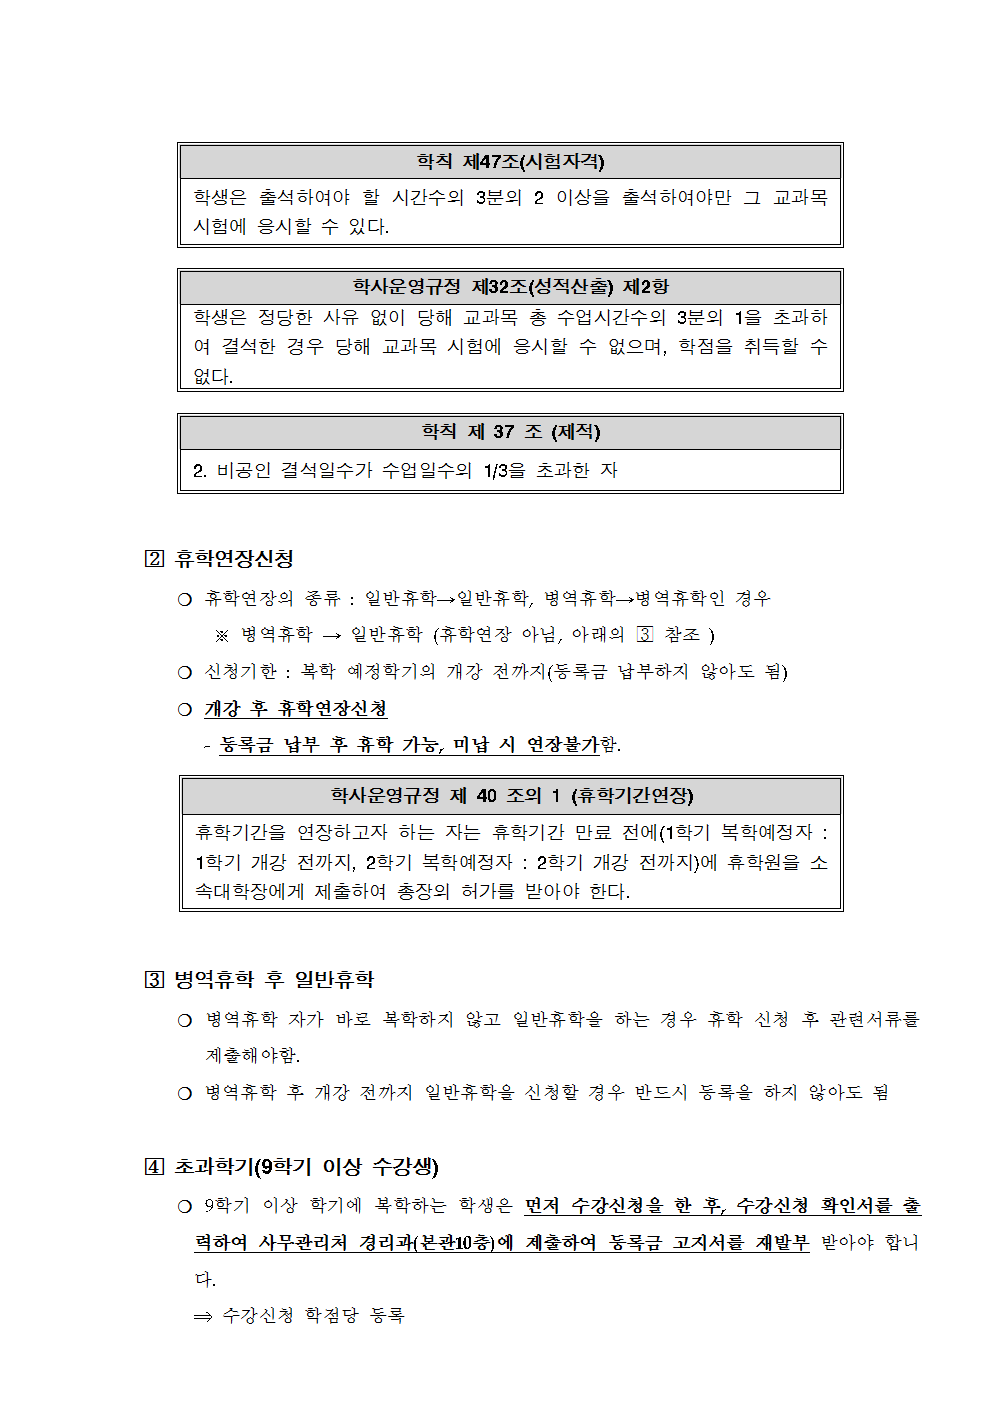 공문 2019-1 복학신청 안내004.png